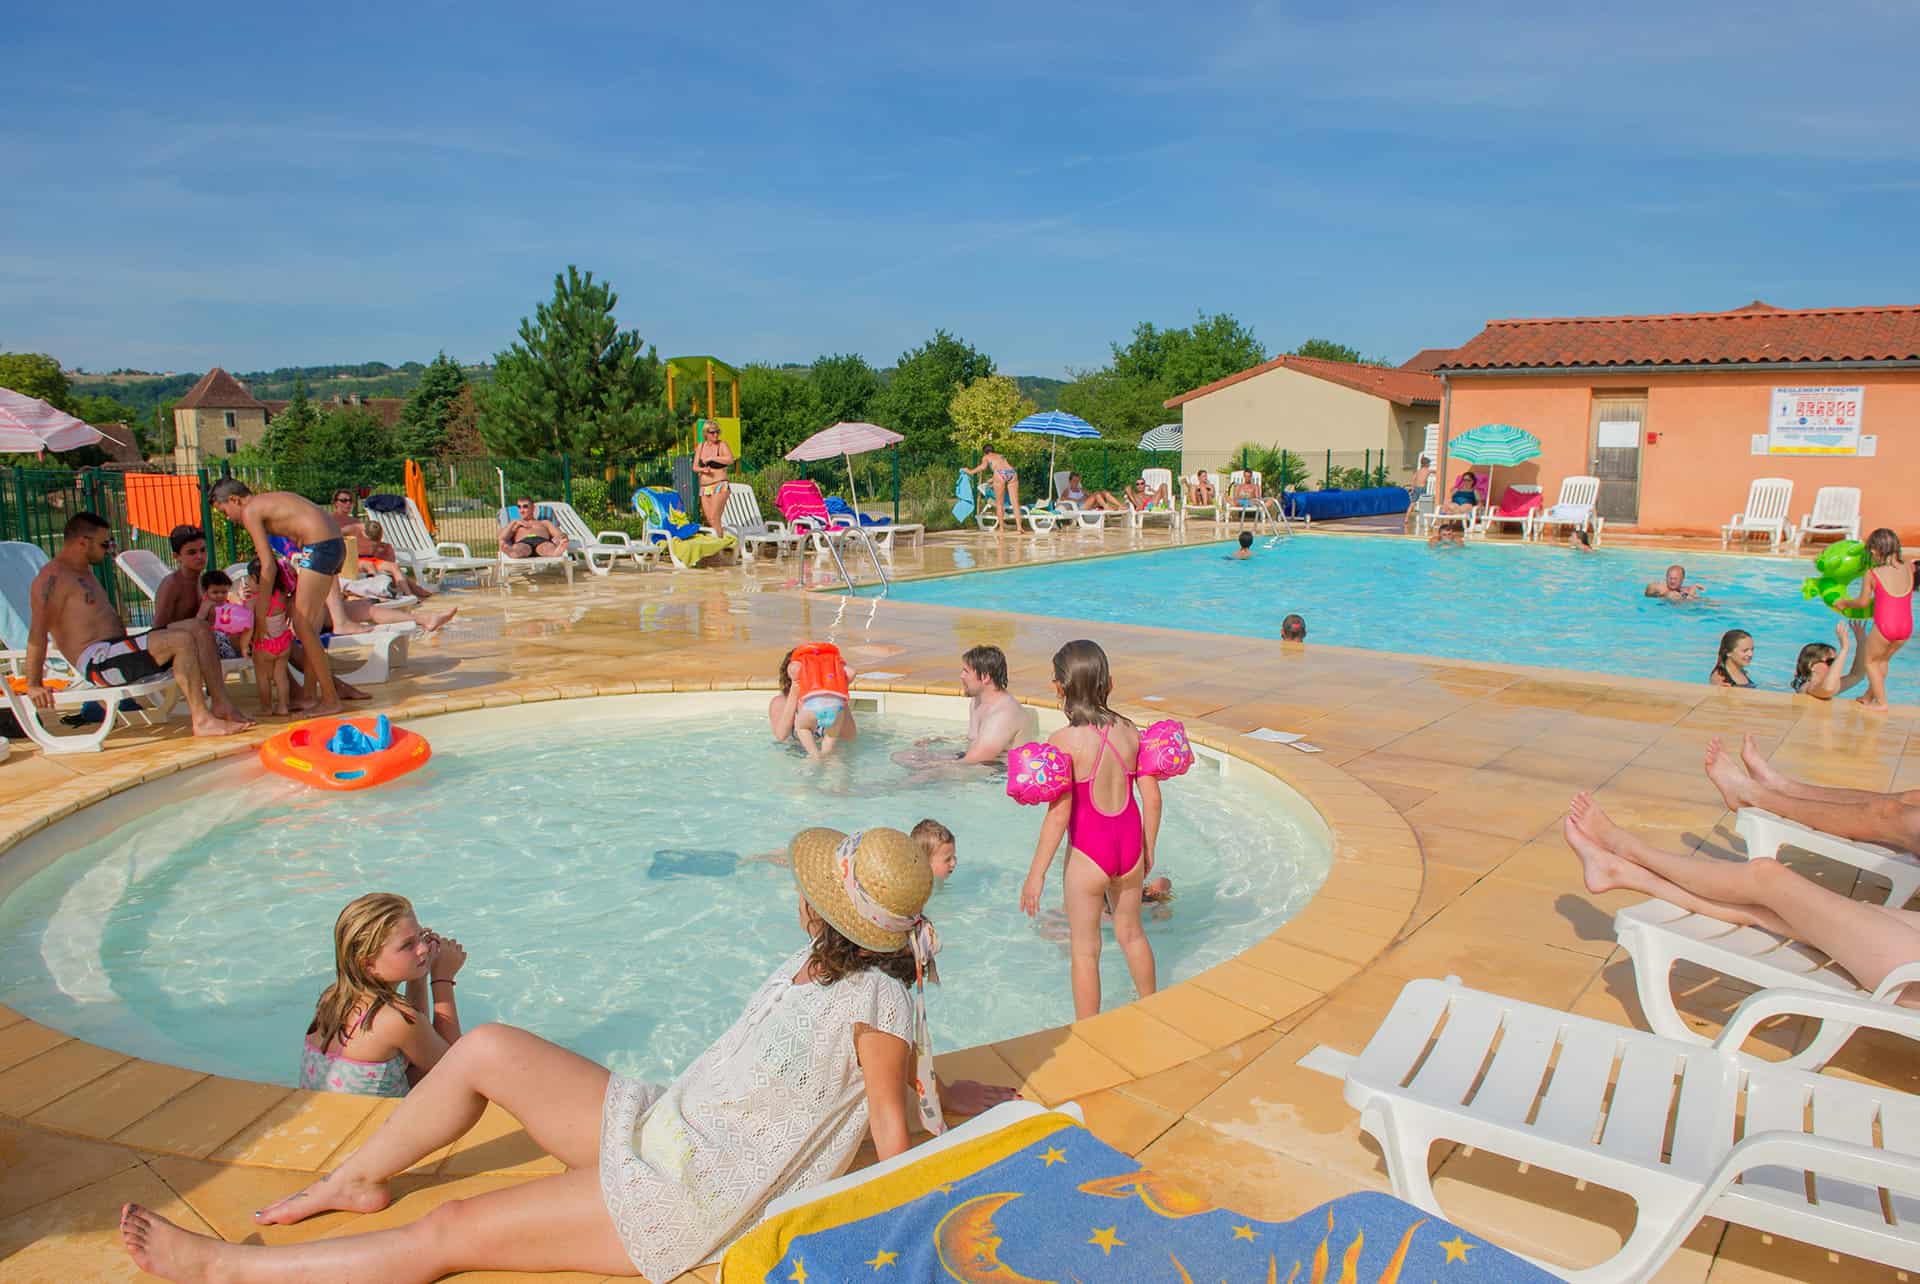 Pool and children’s pool of Le Hameau de la Vézère Goélia complex in Le Bugue